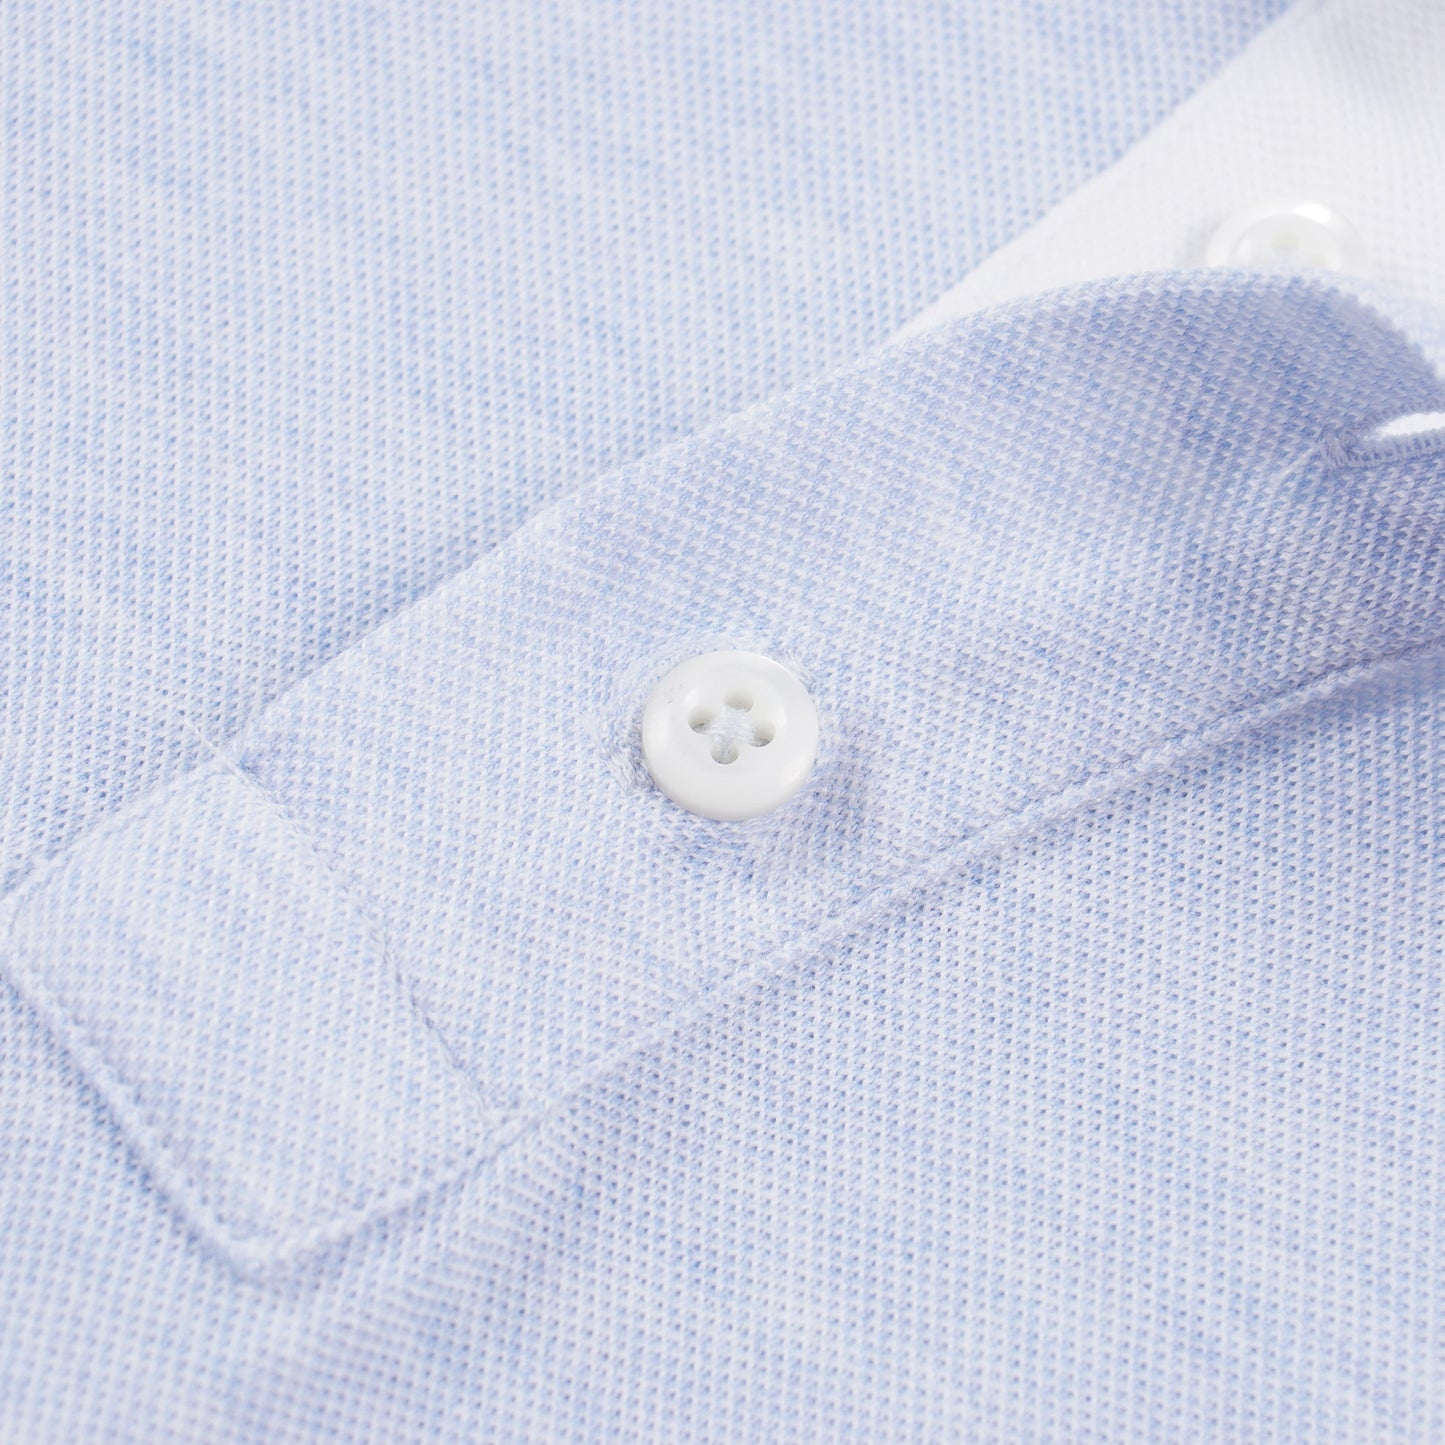 Luigi Borrelli Pique Knit Cotton Polo Shirt - Top Shelf Apparel